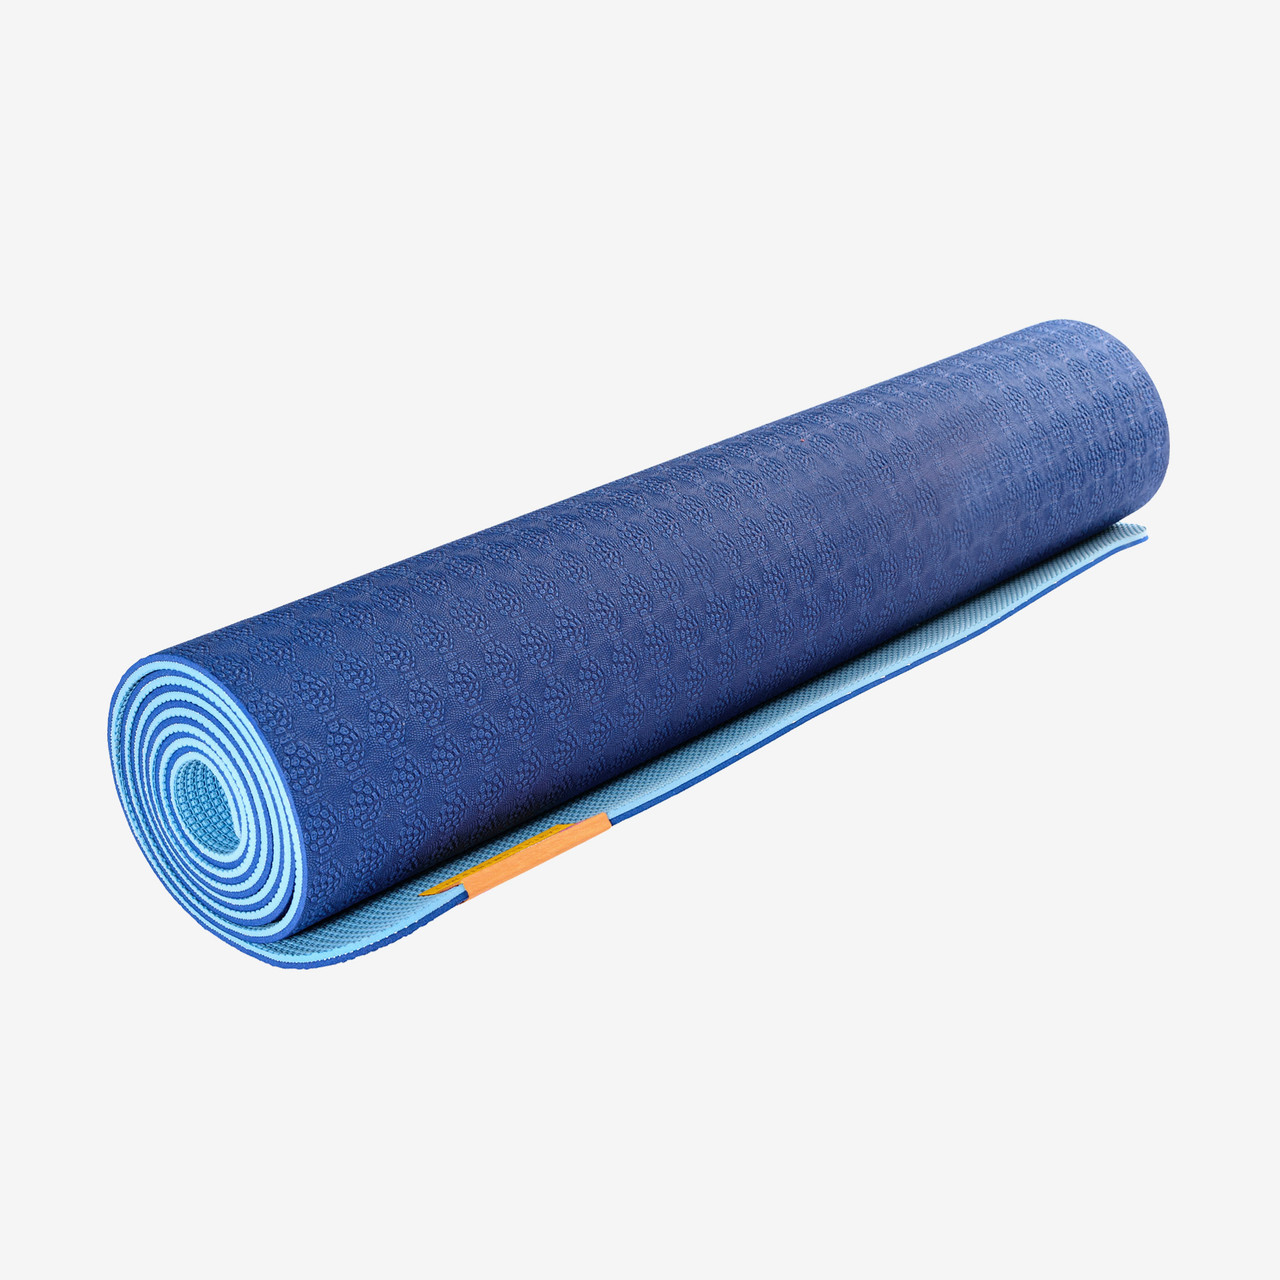 Ecological yoga mat XL 5mm - Sri yantra